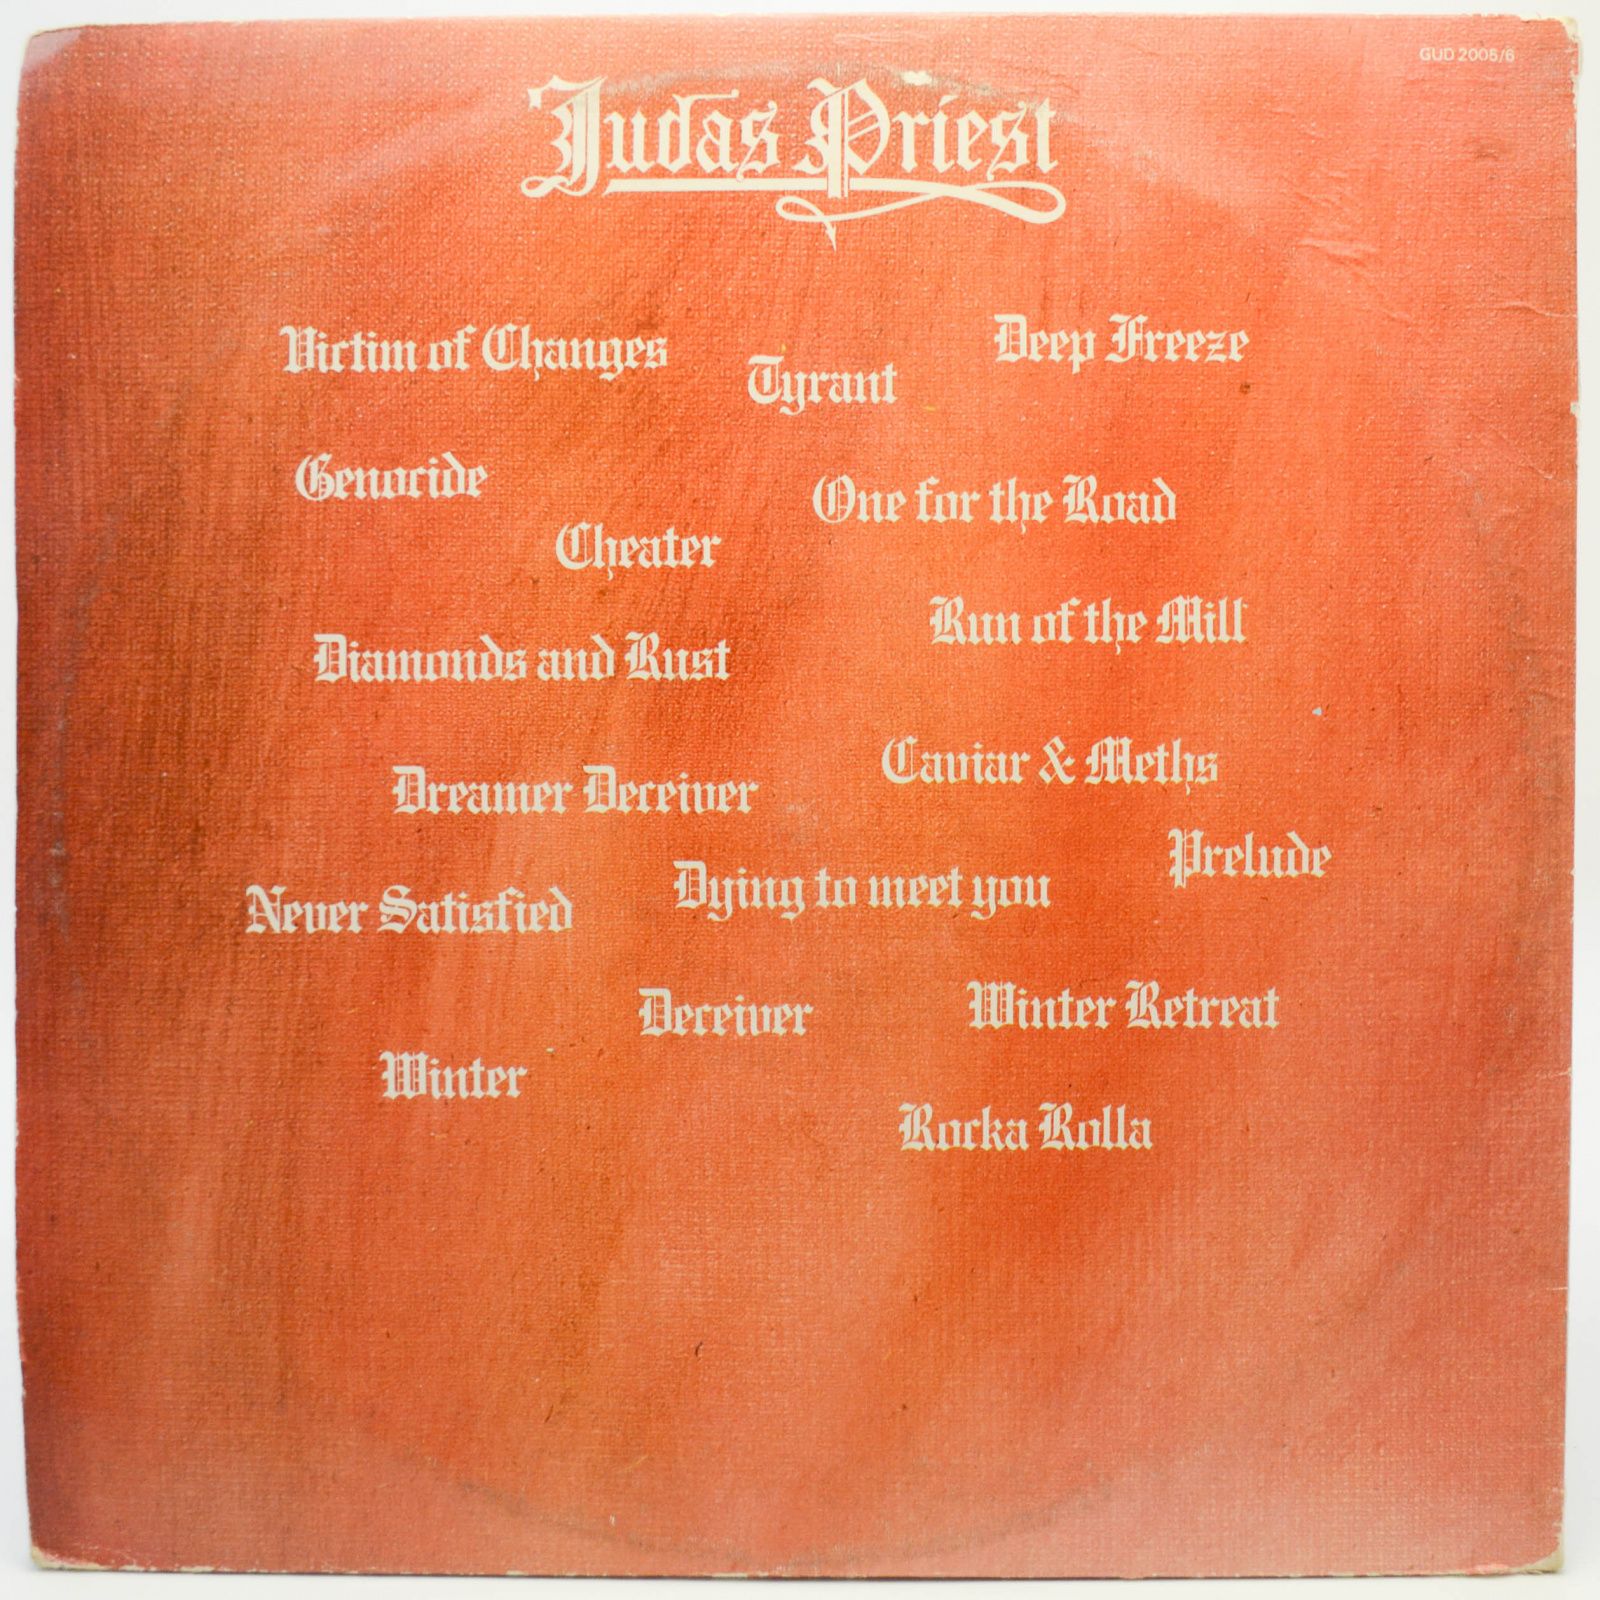 Judas Priest — Hero, Hero (2LP, UK), 1981